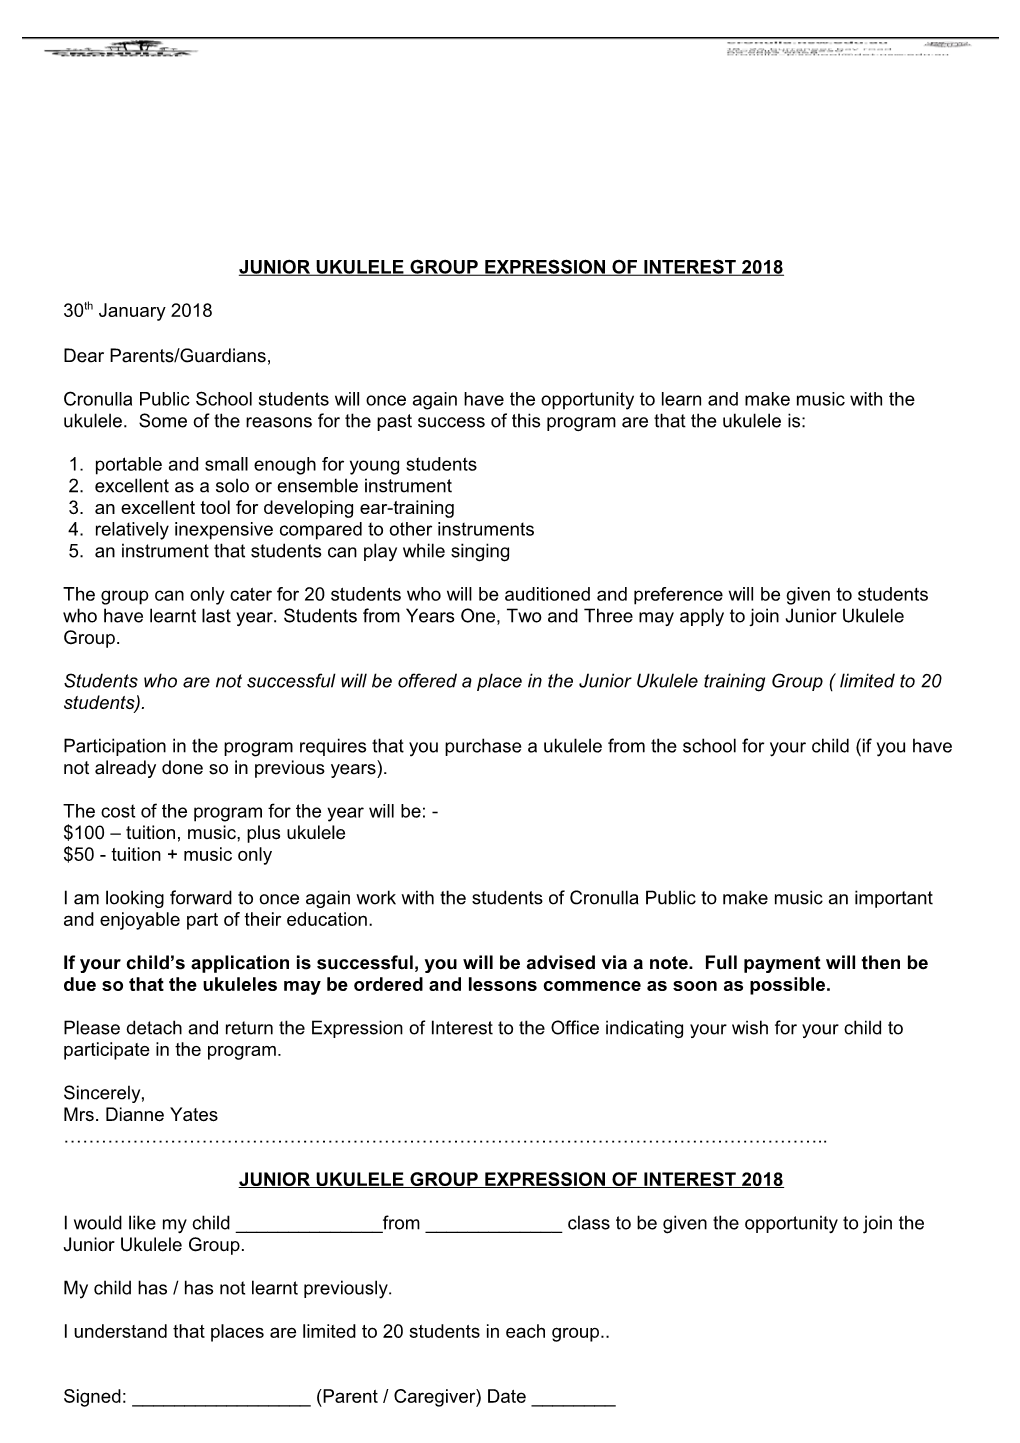 Junior Ukulele Group Expression of Interest 2018